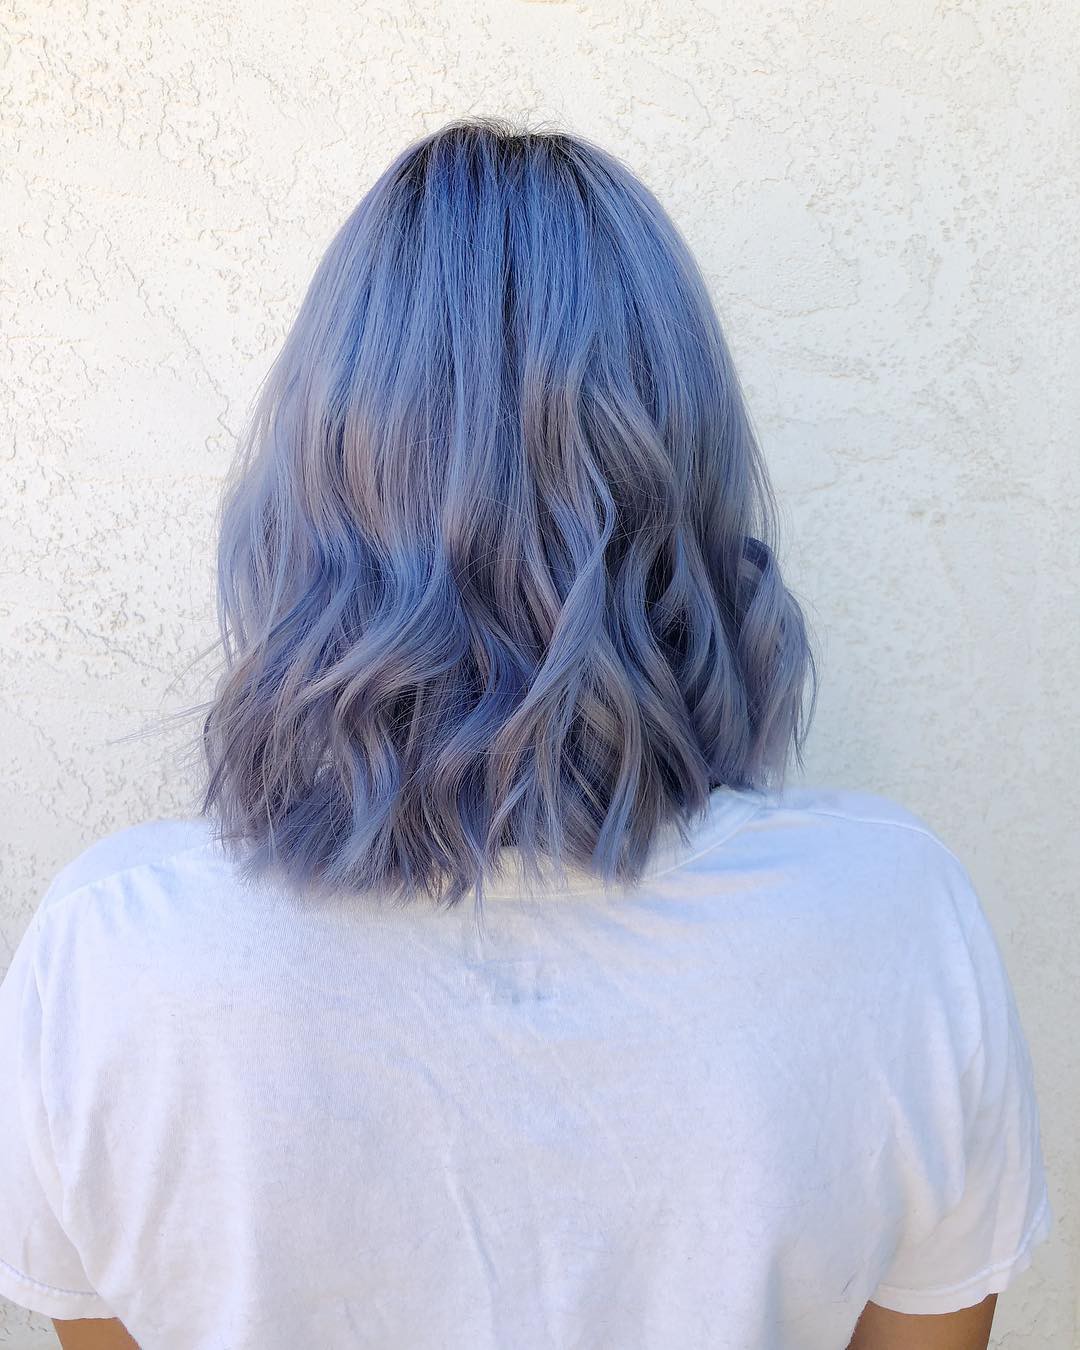 Tóc xanh tím khói là một xu hướng tuyệt đẹp và nổi bật trong thế giới thời trang hiện đại. Với sự kết hợp giữa hai màu sắc táo bạo này, bạn sẽ sở hữu một kiểu tóc đầy cá tính và độc đáo. Hãy xem hình ảnh về tóc xanh tím khói để tìm kiếm cảm hứng cho mái tóc của bạn!